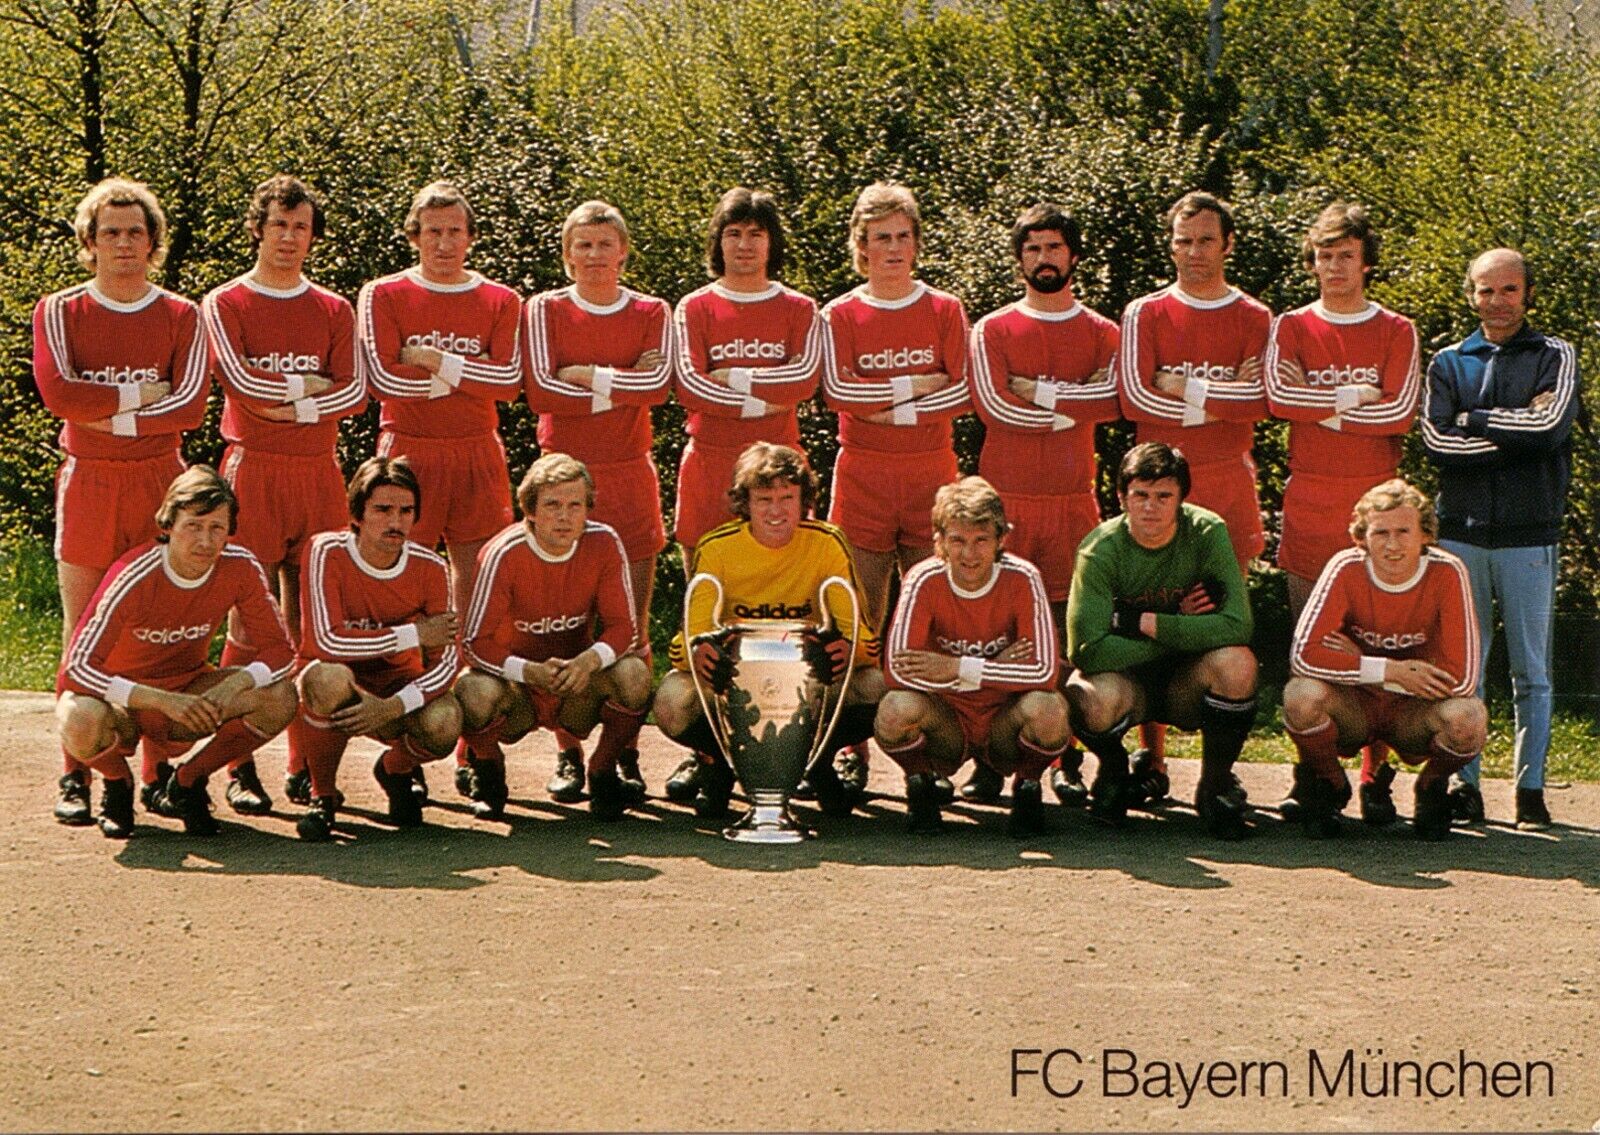 FC Bayern Munich team card 1975-76 